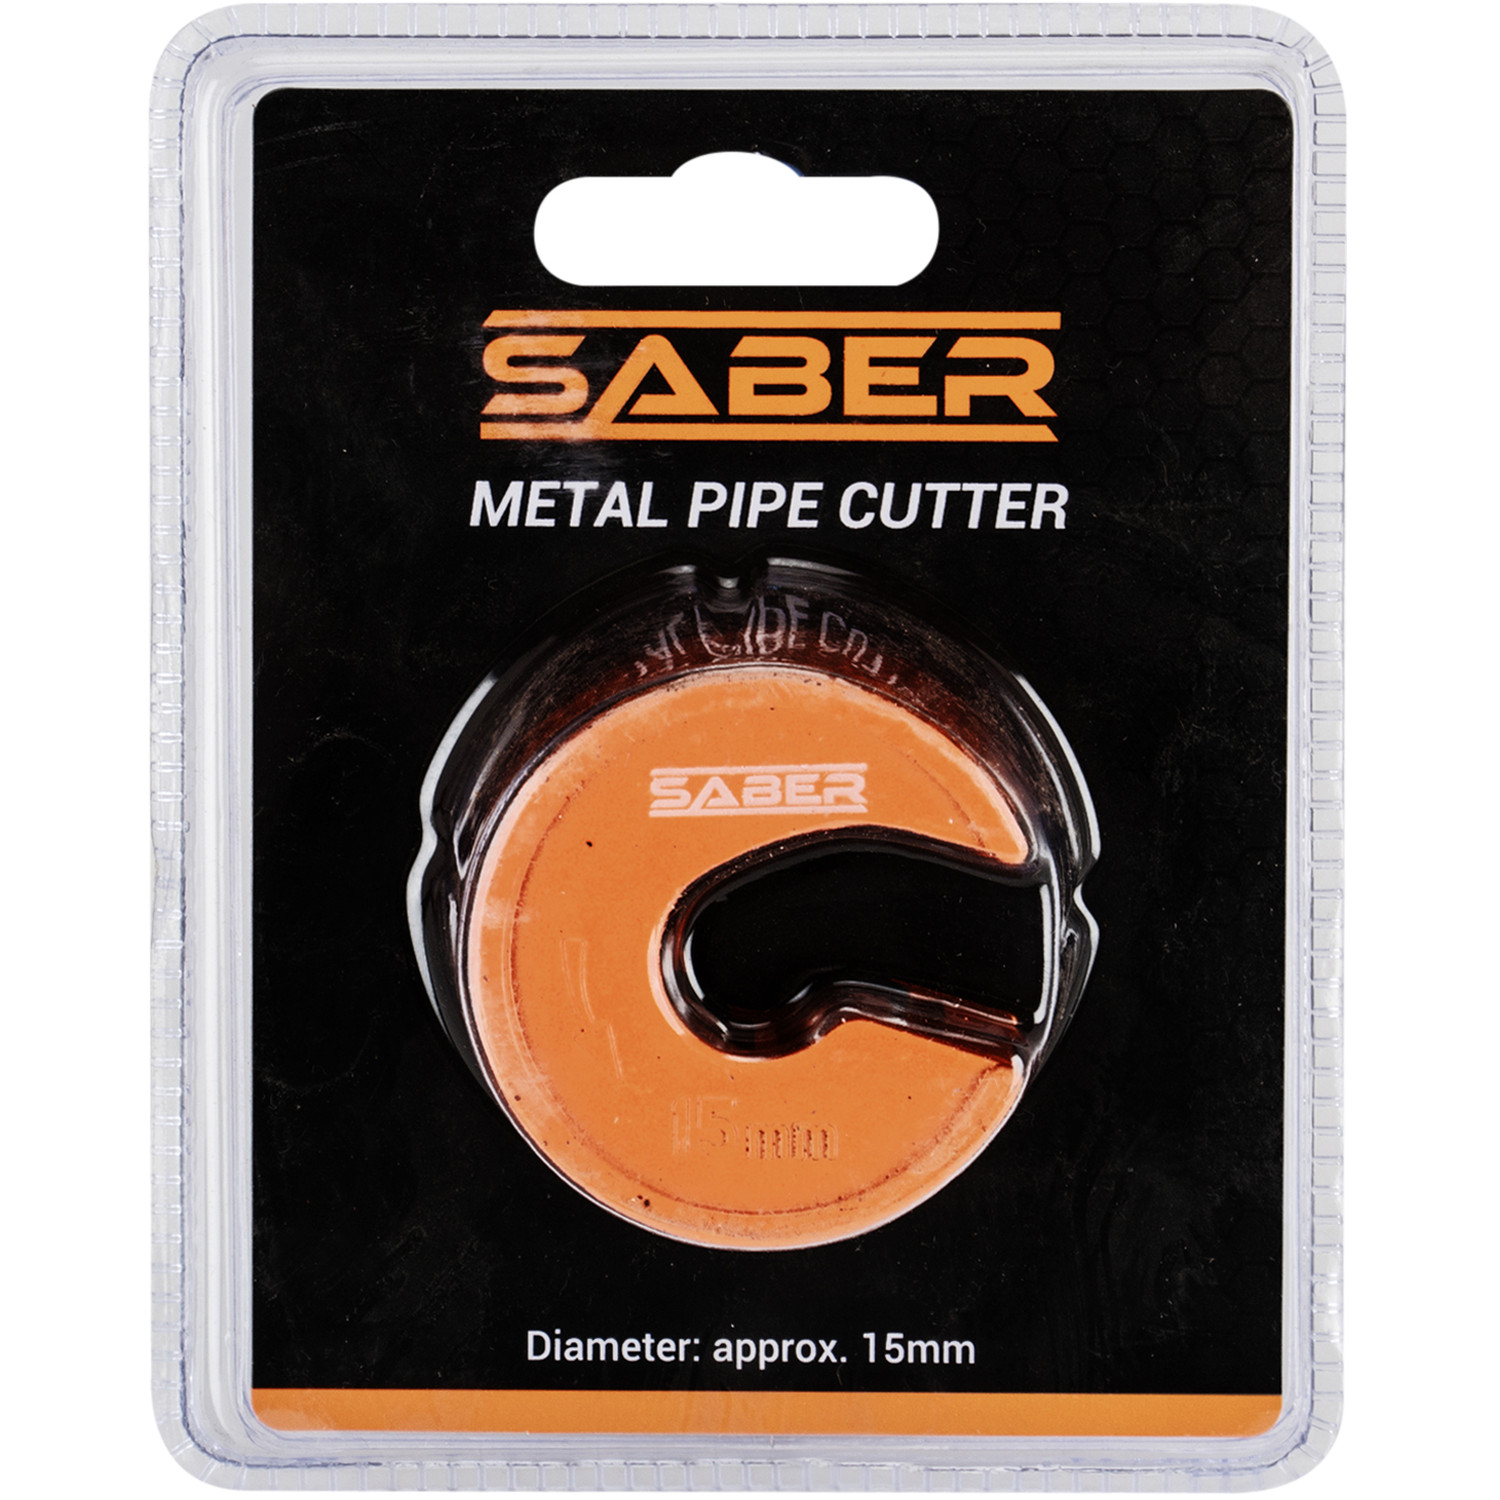 Saber 15mm Metal Pipe Cutter Image